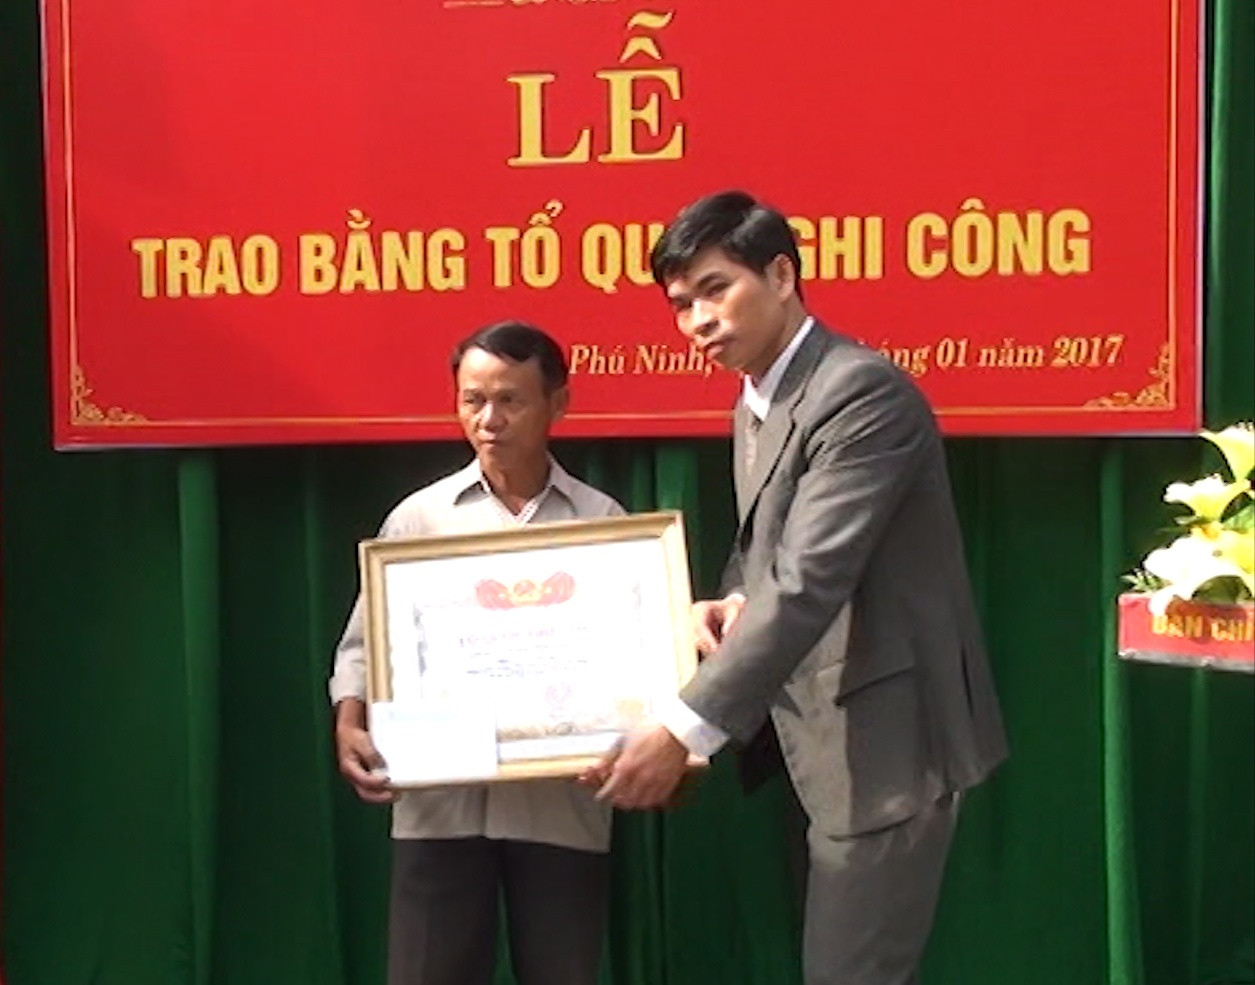 Ông Lê Văn Ninh - Phó Chủ tịch UBND huyện Phú Ninh trao bằng Tổ quốc ghi công cho thân nhân liệt sĩ Trần Đức Liêm. Ảnh: VINH CHÂU